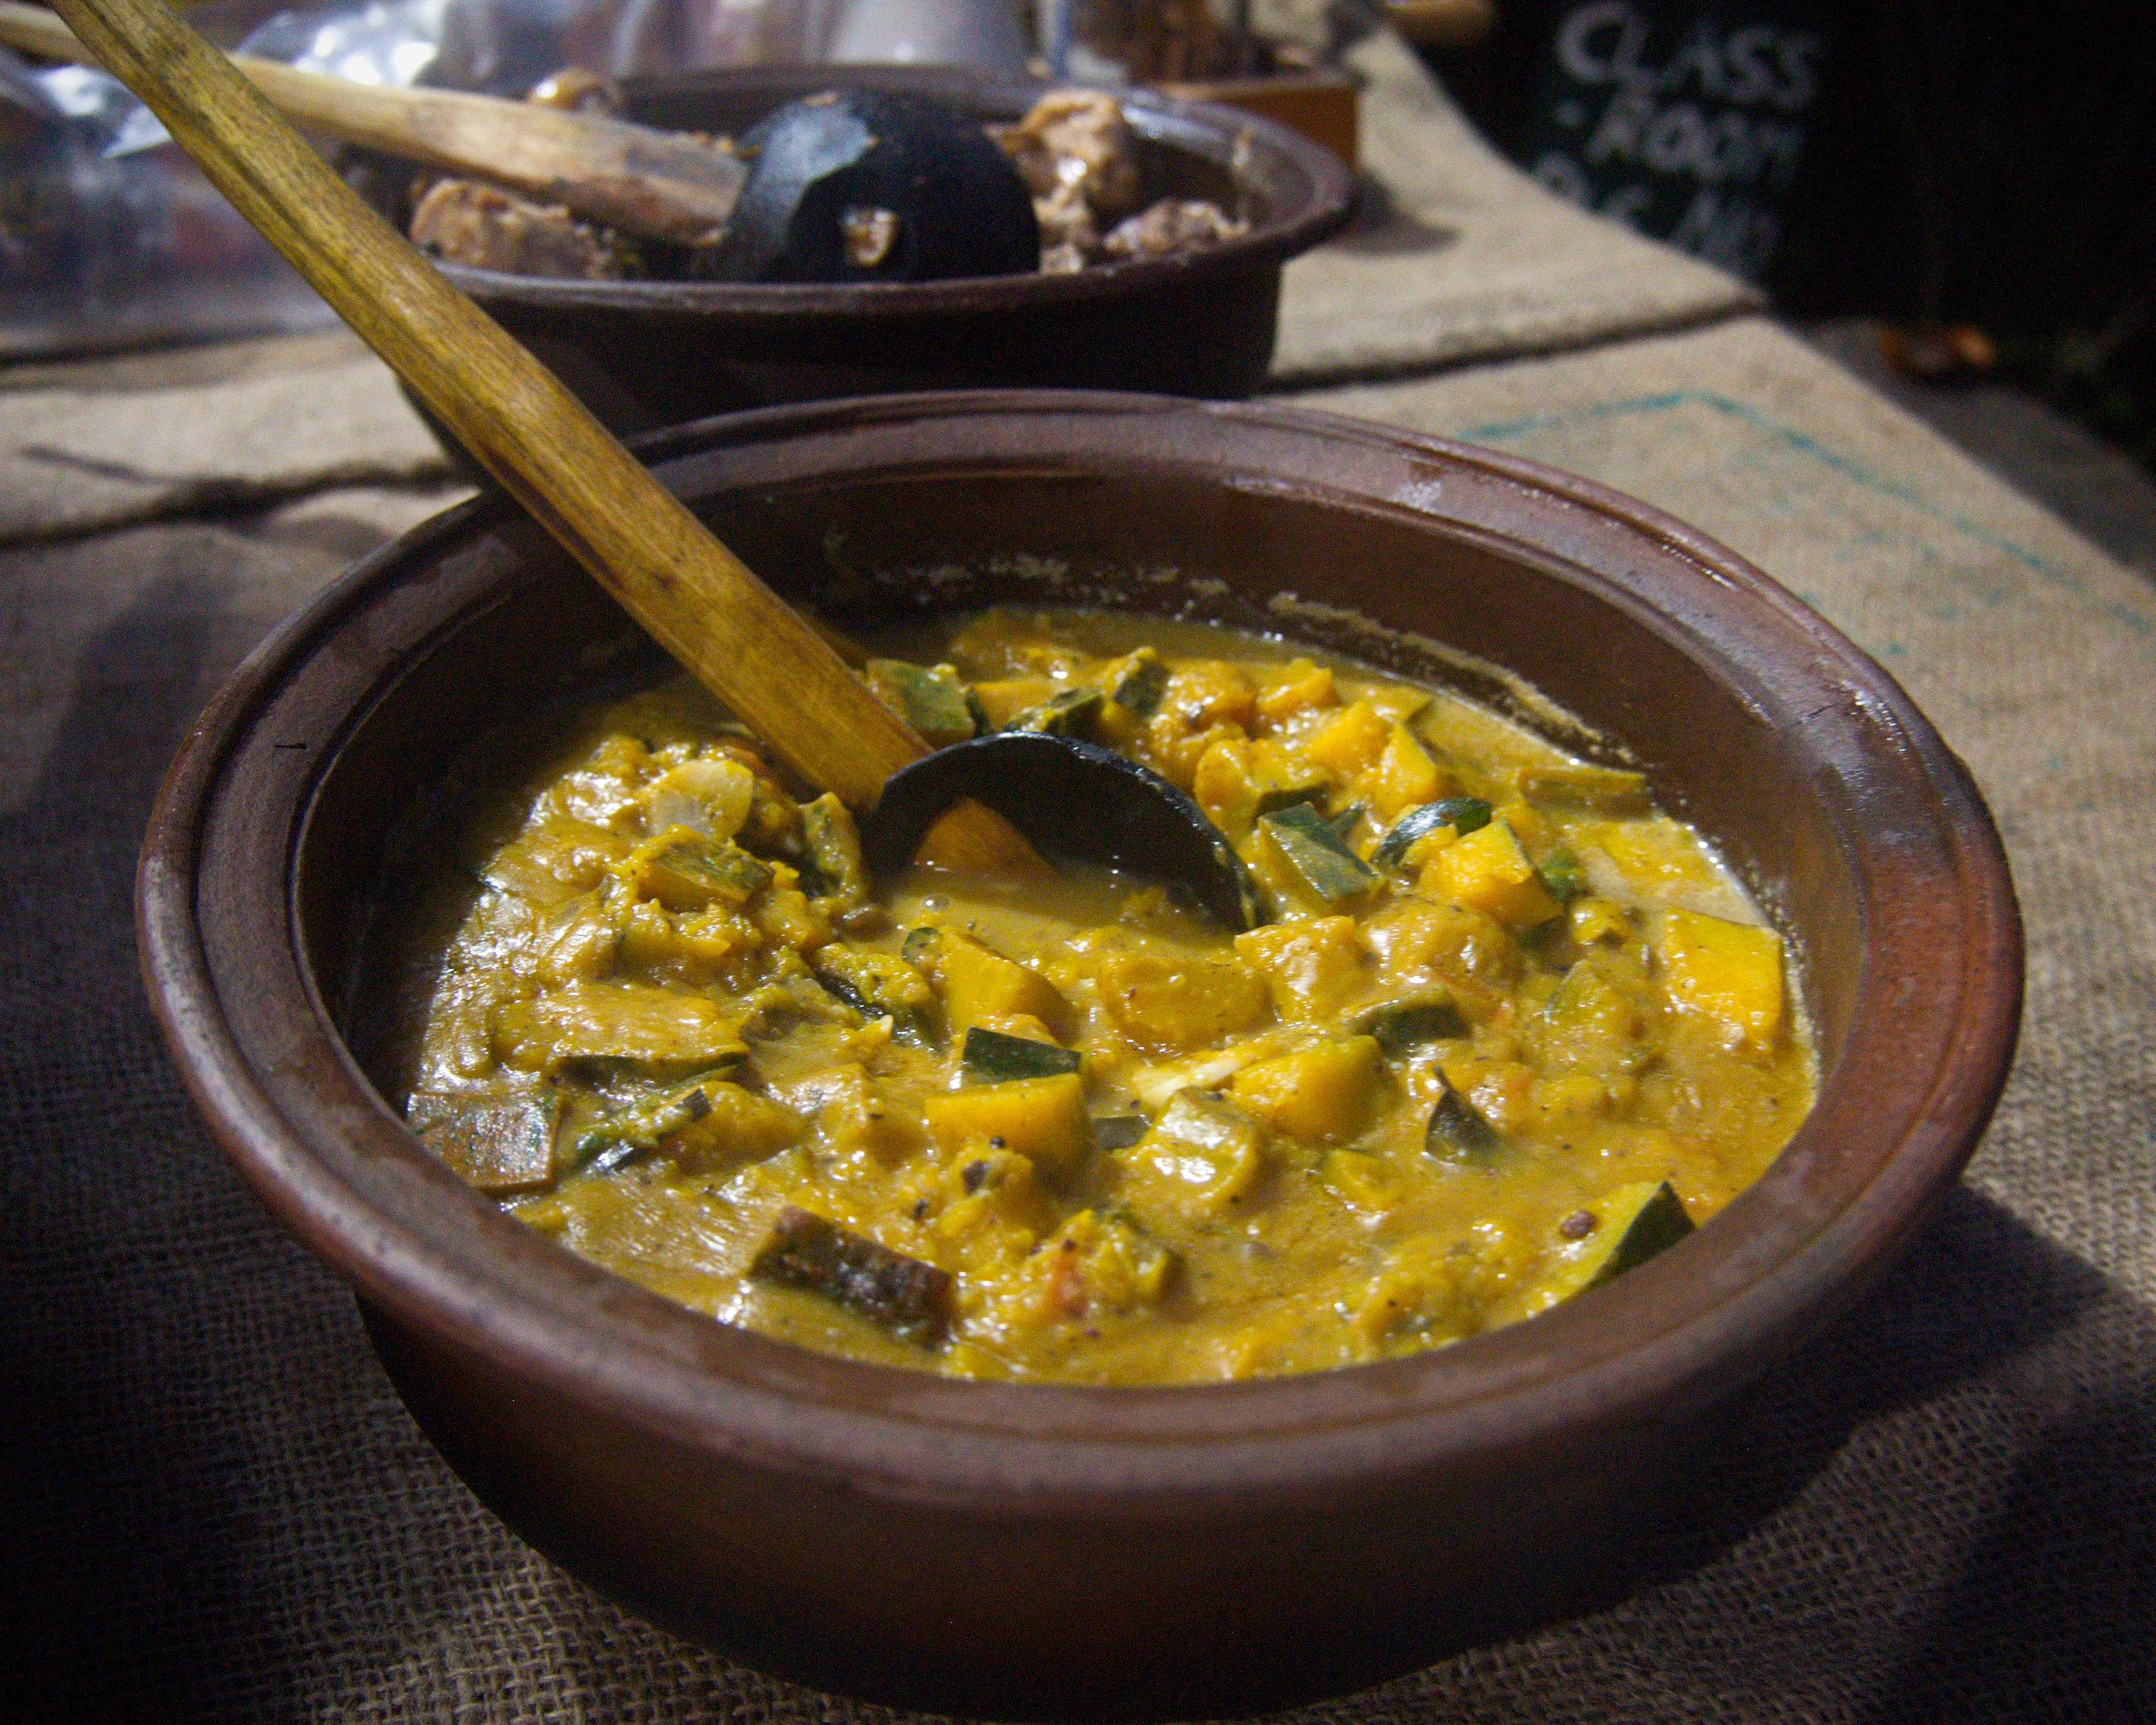 Küche Sri Lanka typisches Essen Curry Gemüse Restaurant Top 10 Tipps Sri Lanka Reisetipps Reiseblog 3